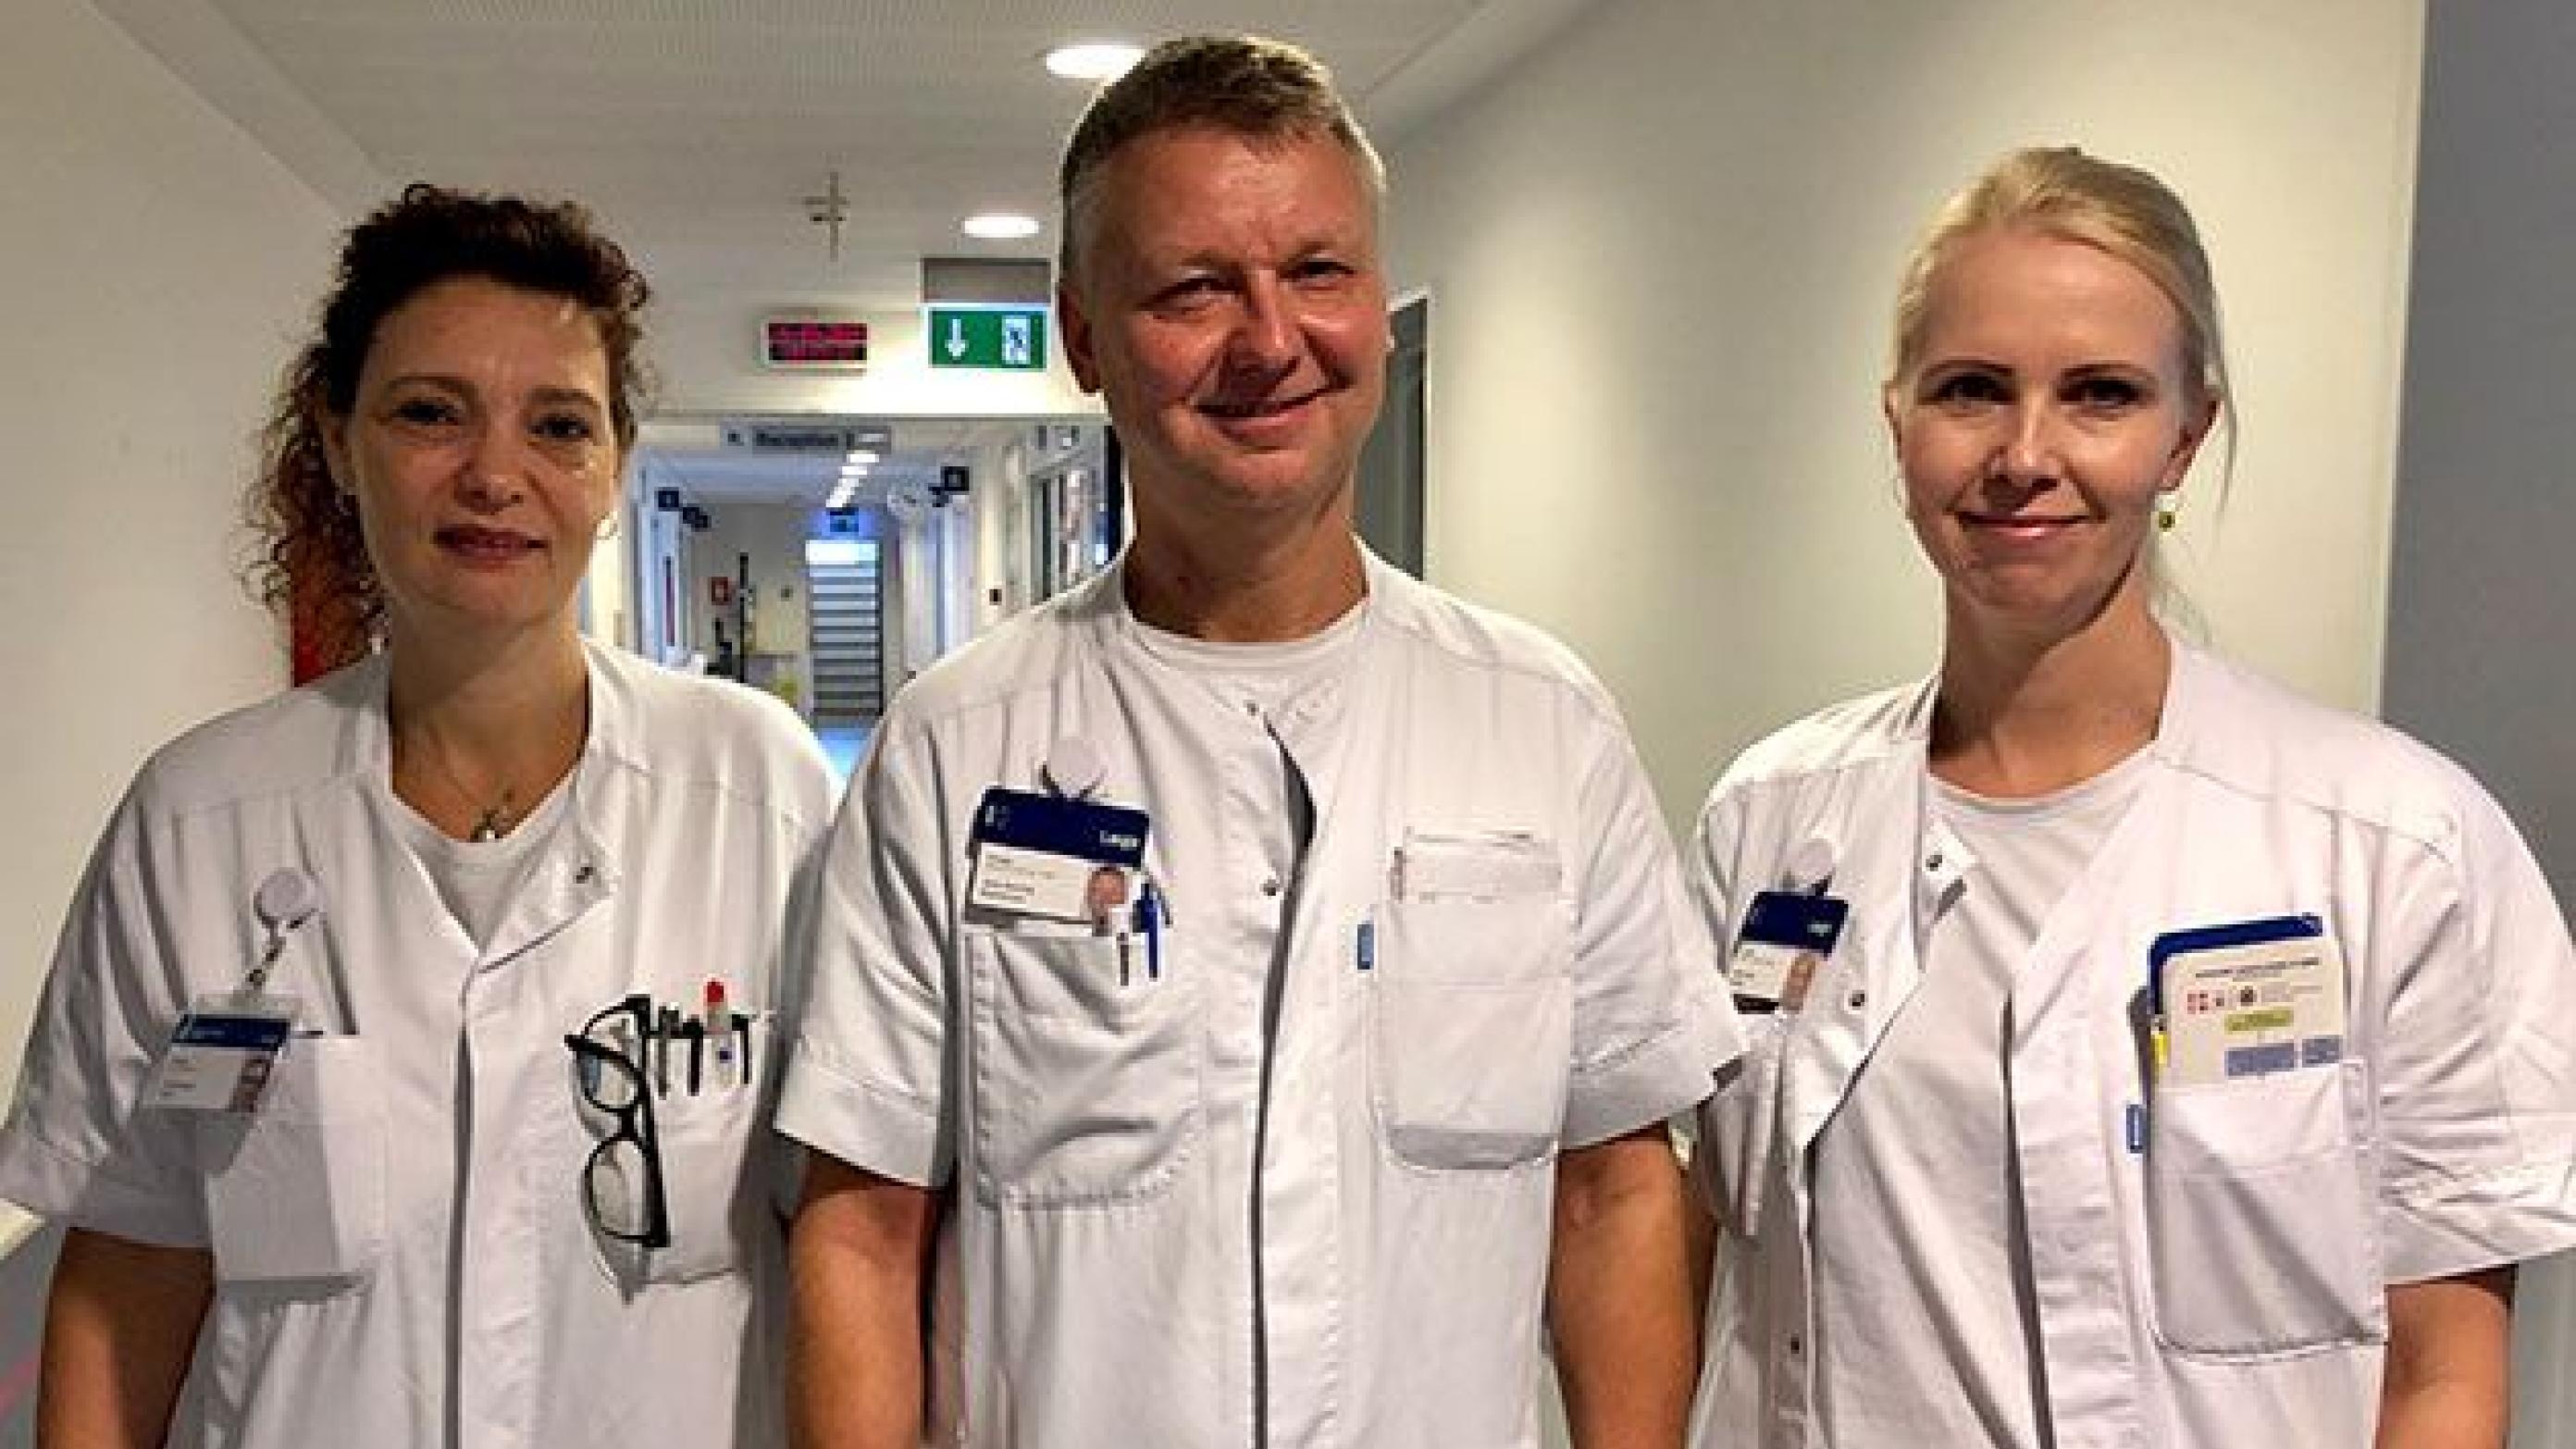  Lamia Hviid, Jens Rasmussen og Mette Dam Olesen er speciallæger i almen medicin og ansat på akutklinikken på Amager Hospital. Foto: Anders Heissel